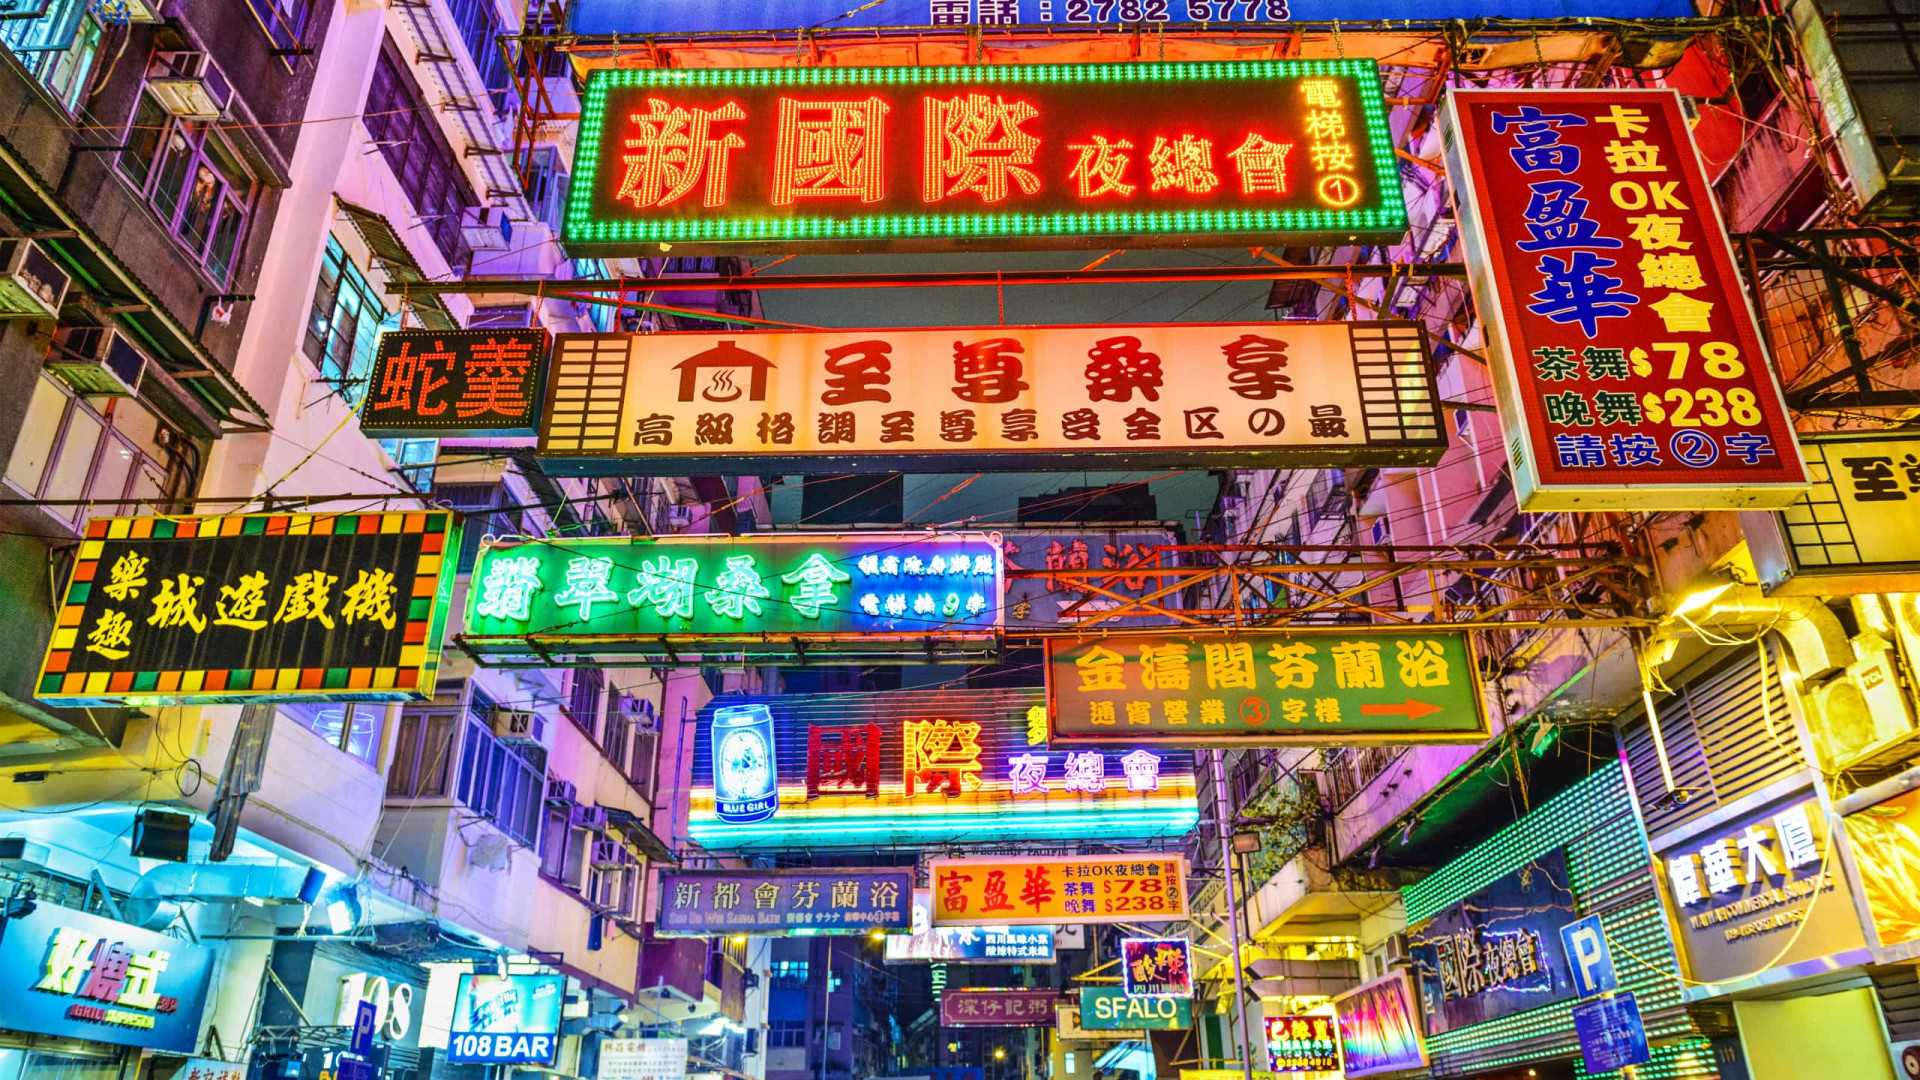 Taiwan entra em recessão, Hong Kong sai, com turistas da China